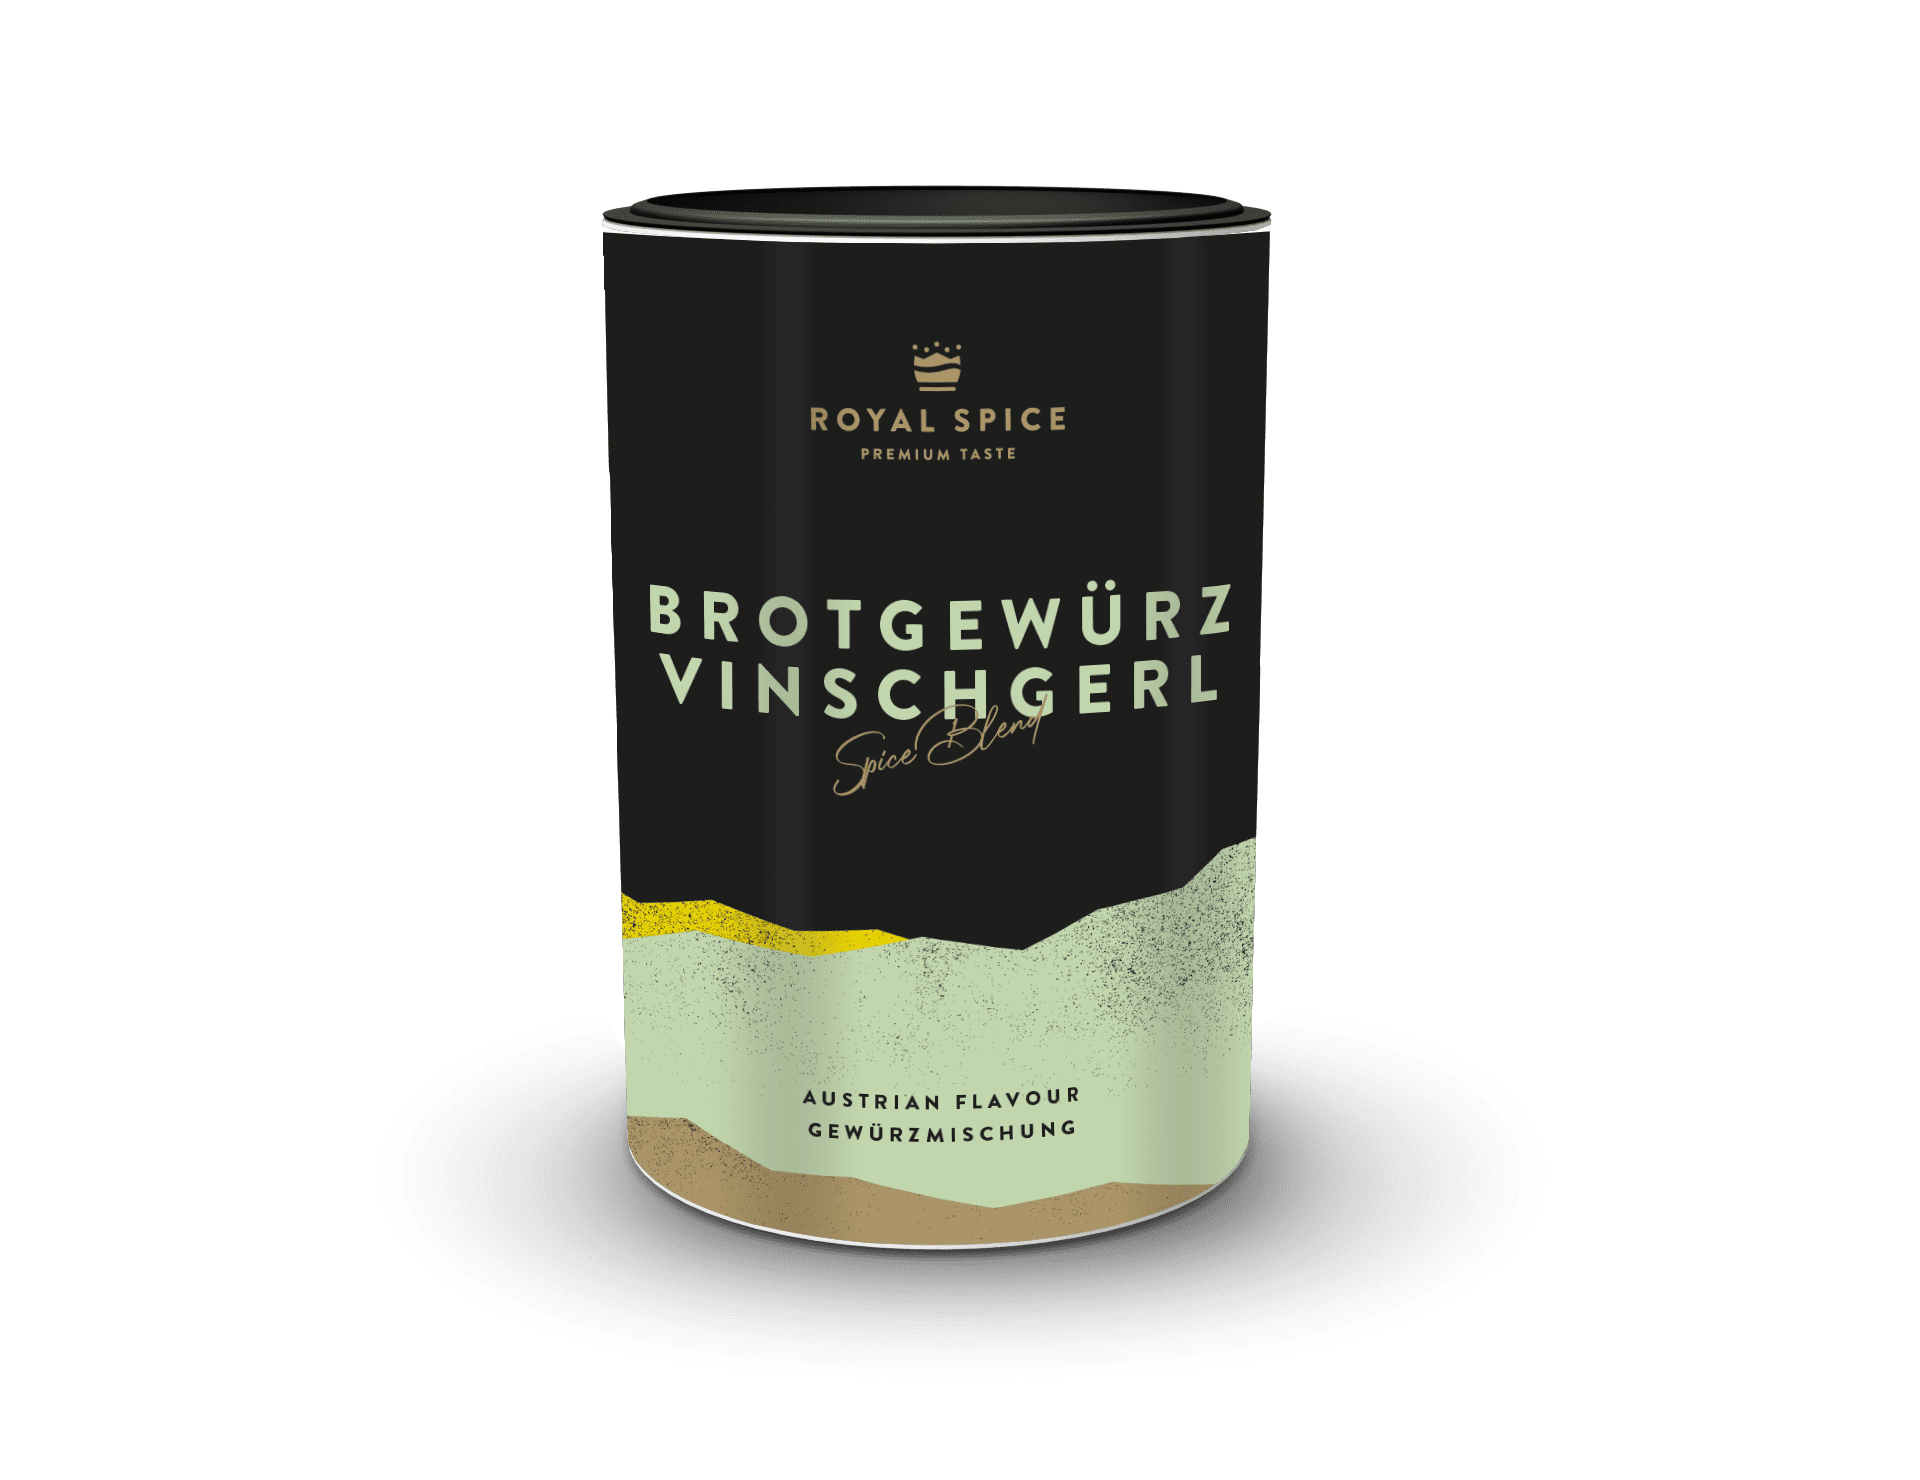 Brotgewürz Vinschgerl